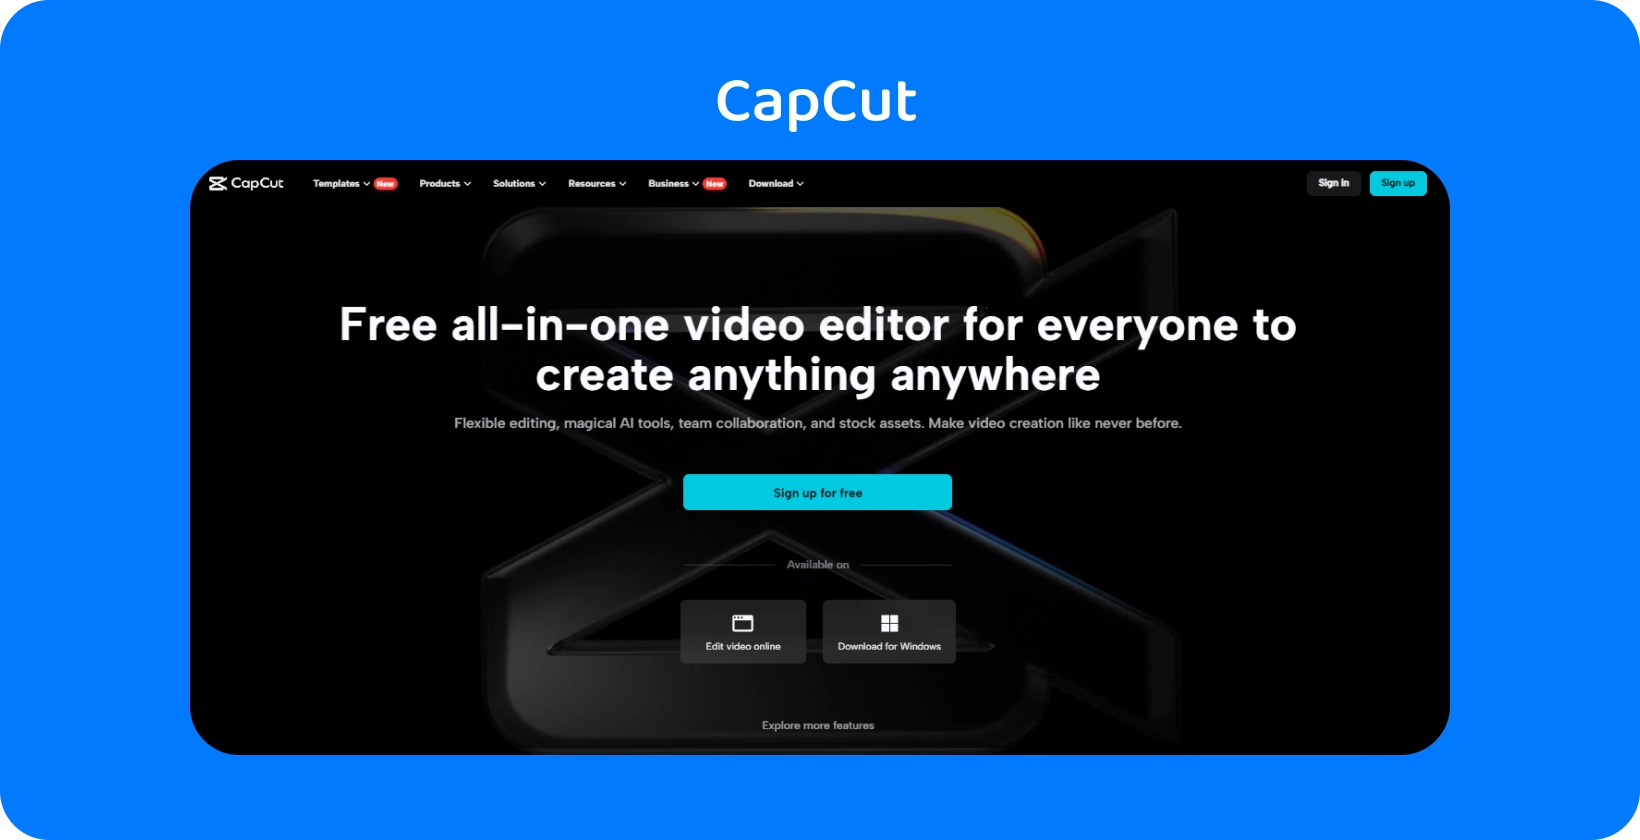 La página de inicio de CapCut muestra un editor de video gratuito todo en uno para crear contenido en cualquier dispositivo, con un diseño oscuro y elegante.
